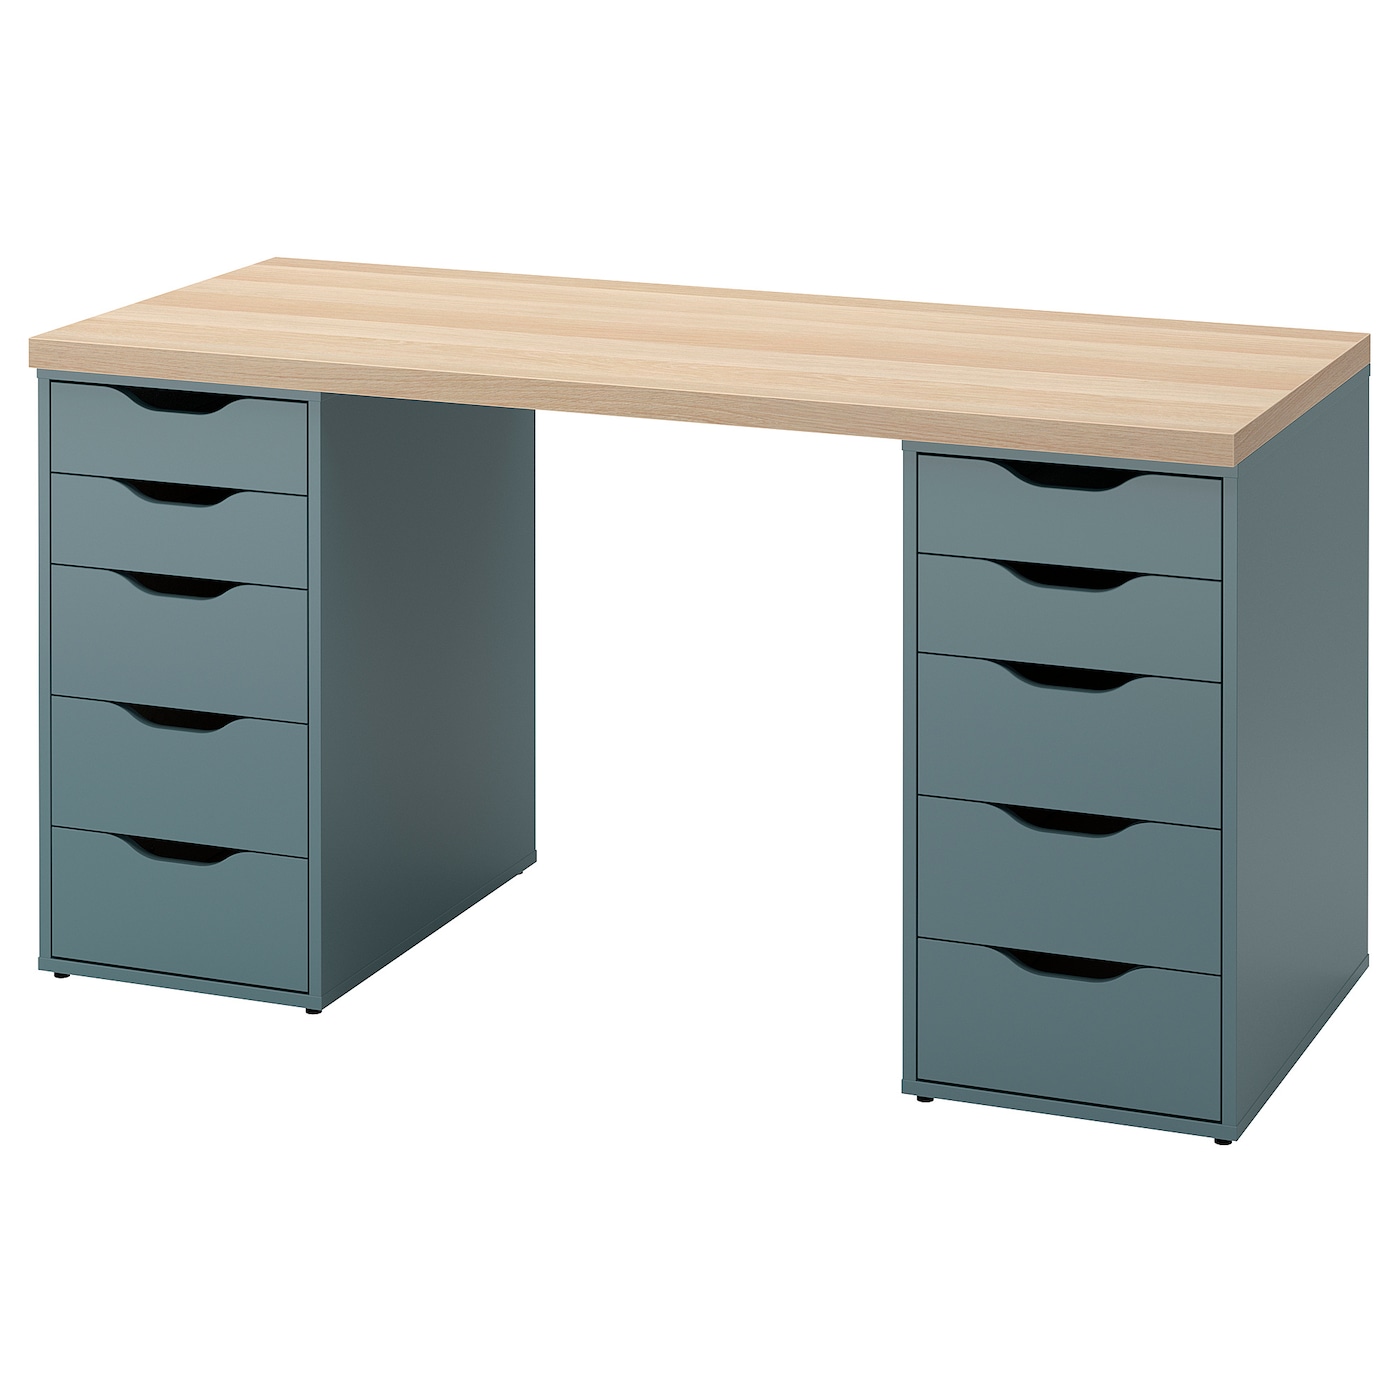 Письменный стол с ящиками - IKEA LAGKAPTEN/ALEX, 140х60 см, под беленый дуб/серо-голубой, ЛАГКАПТЕН/АЛЕКС ИКЕА